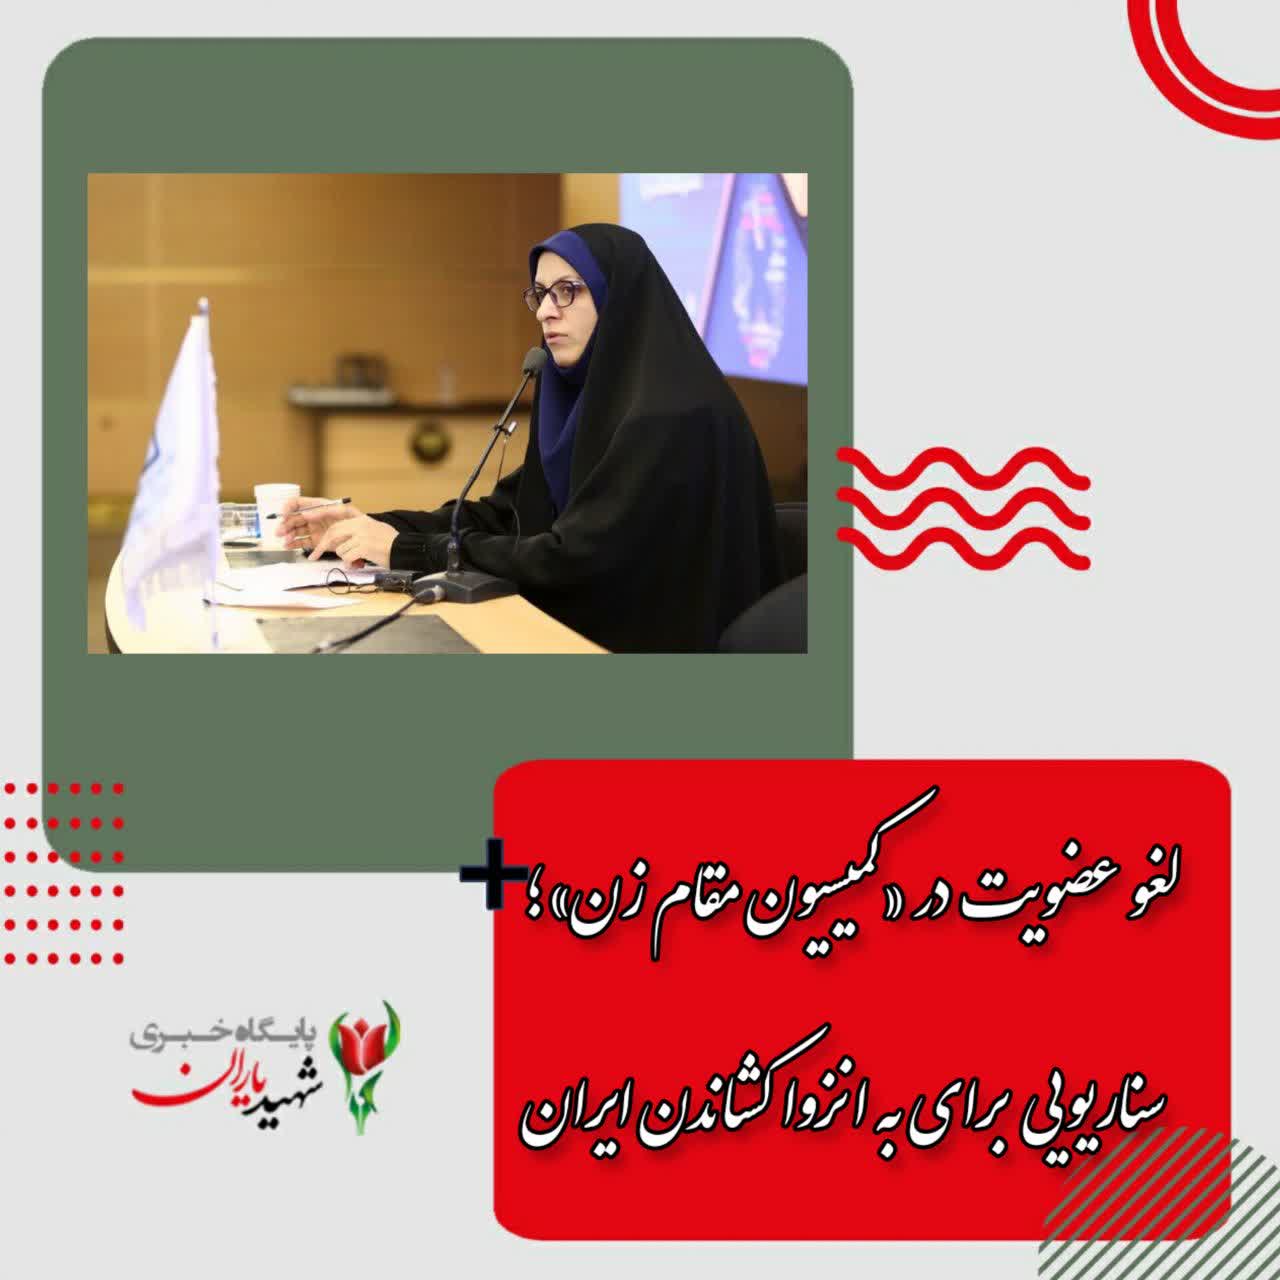 لغو عضویت در «کمیسیون مقام زن»؛ سناریویی برای به انزوا کشاندن ایران<br> <br>  